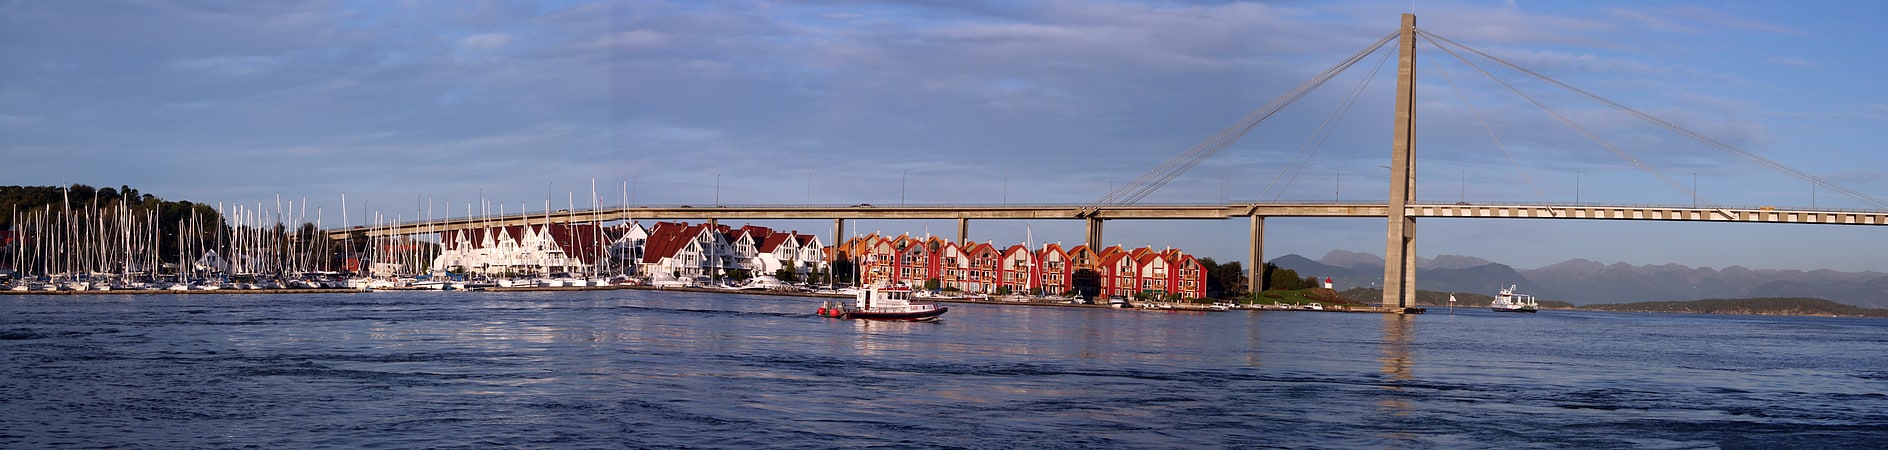 Puente atirantado en Stavanger, Noruega